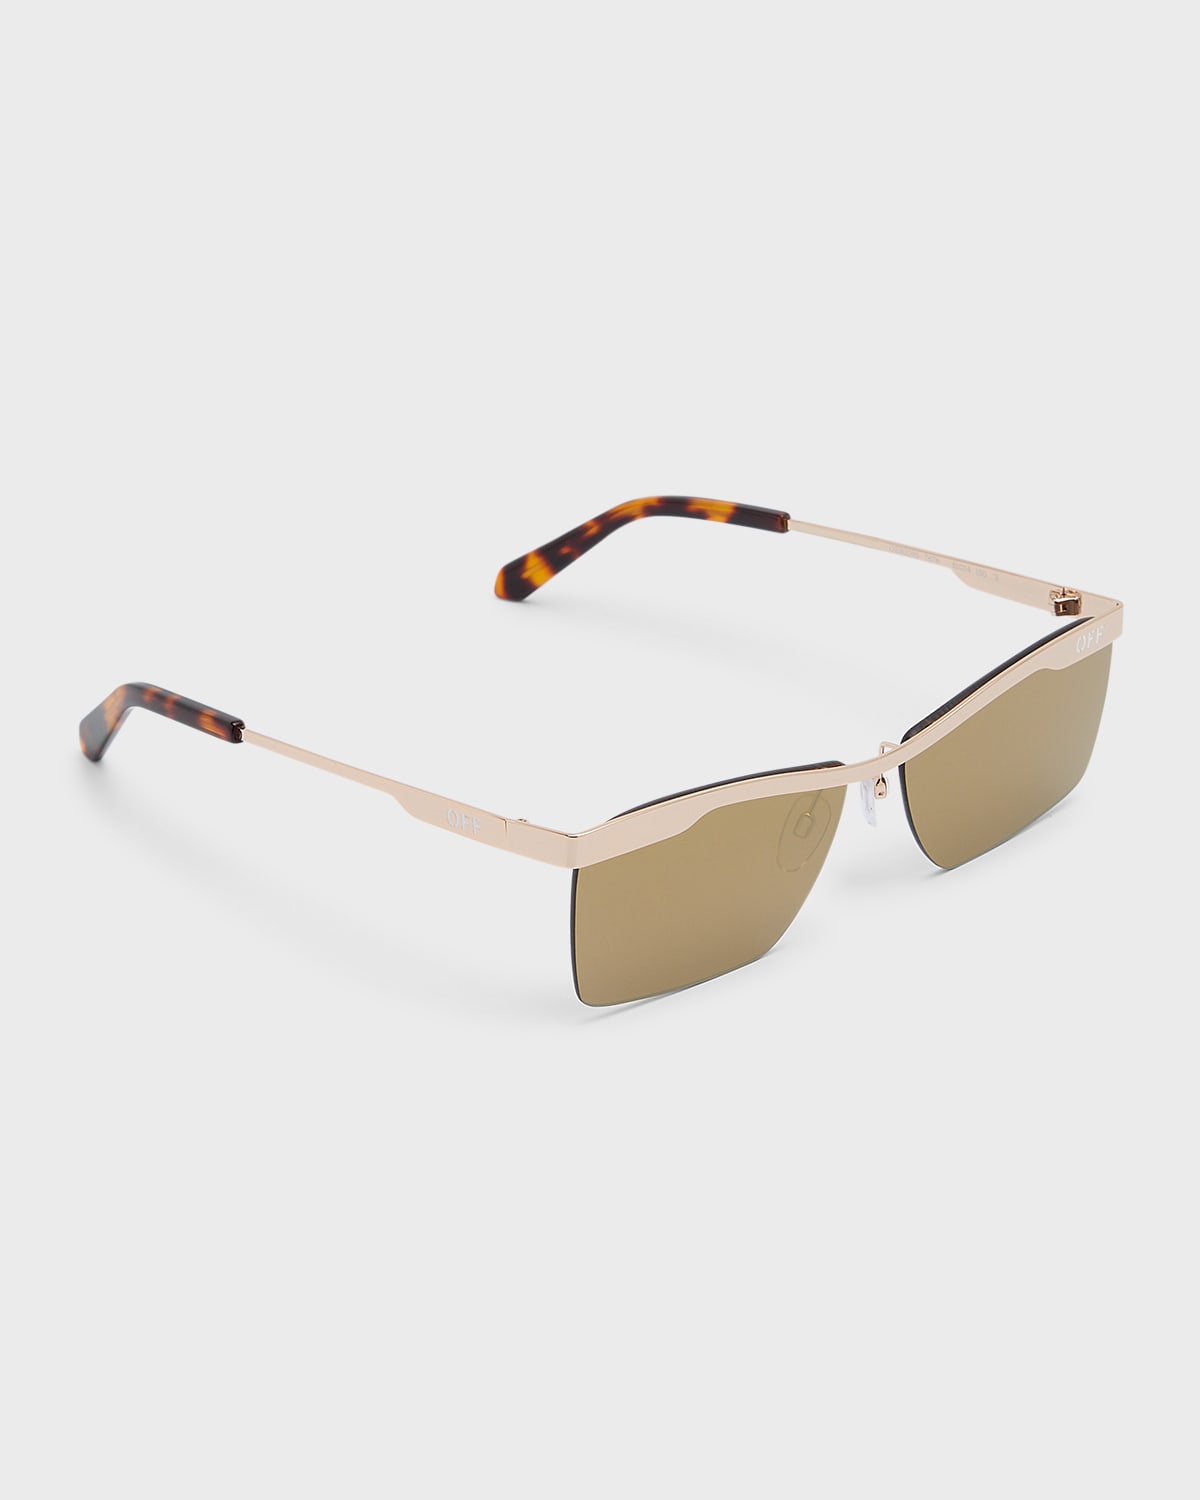 Off-white Rimini Metal Alloy & Plastic Aviator Sunglasses In Gold Mirror Gold